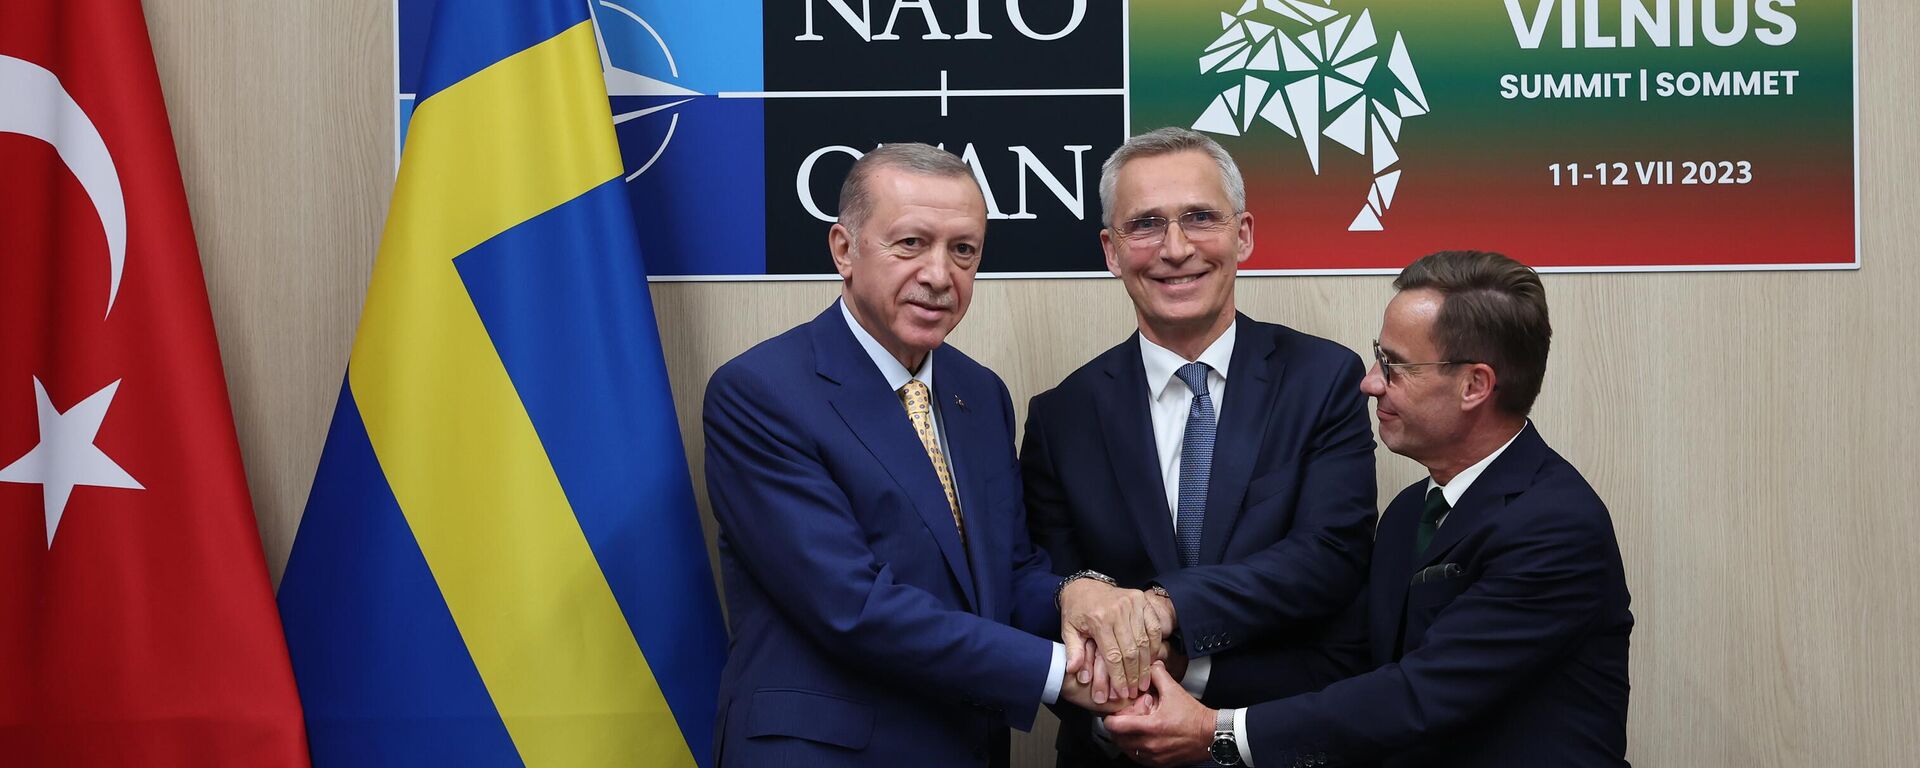 Cumhurbaşkanı Recep Tayyip Erdoğan, NATO Genel Sekreteri Jens Stoltenberg ve İsveç Başbakanı Ulf Kristersson - Sputnik Türkiye, 1920, 11.07.2023